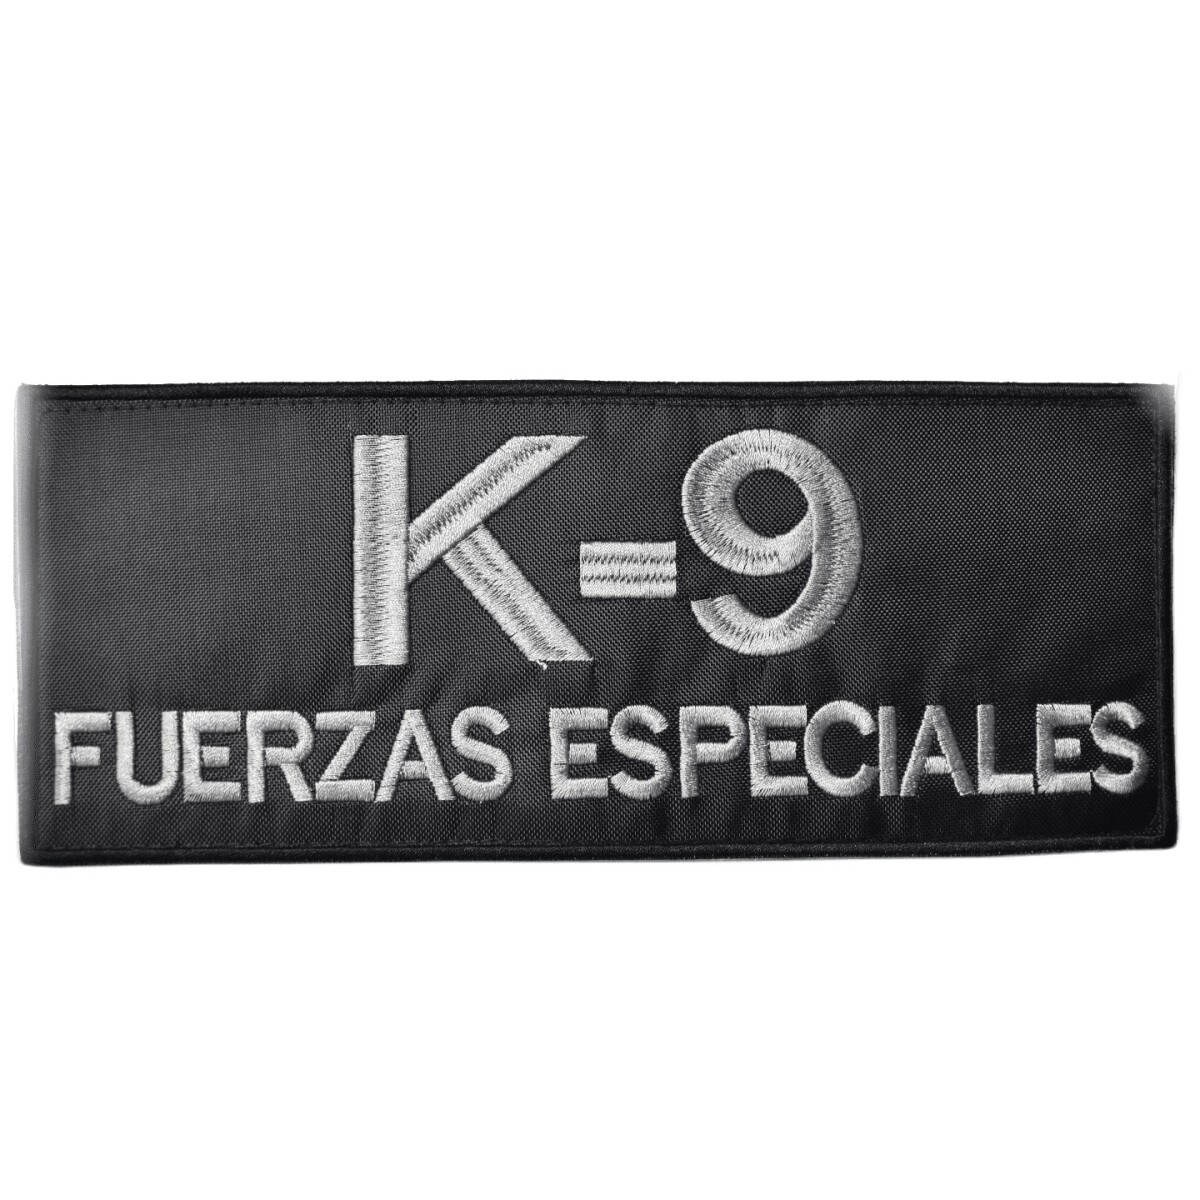 Parche bordado para chaleco - K9 Fuerzas Especiales 